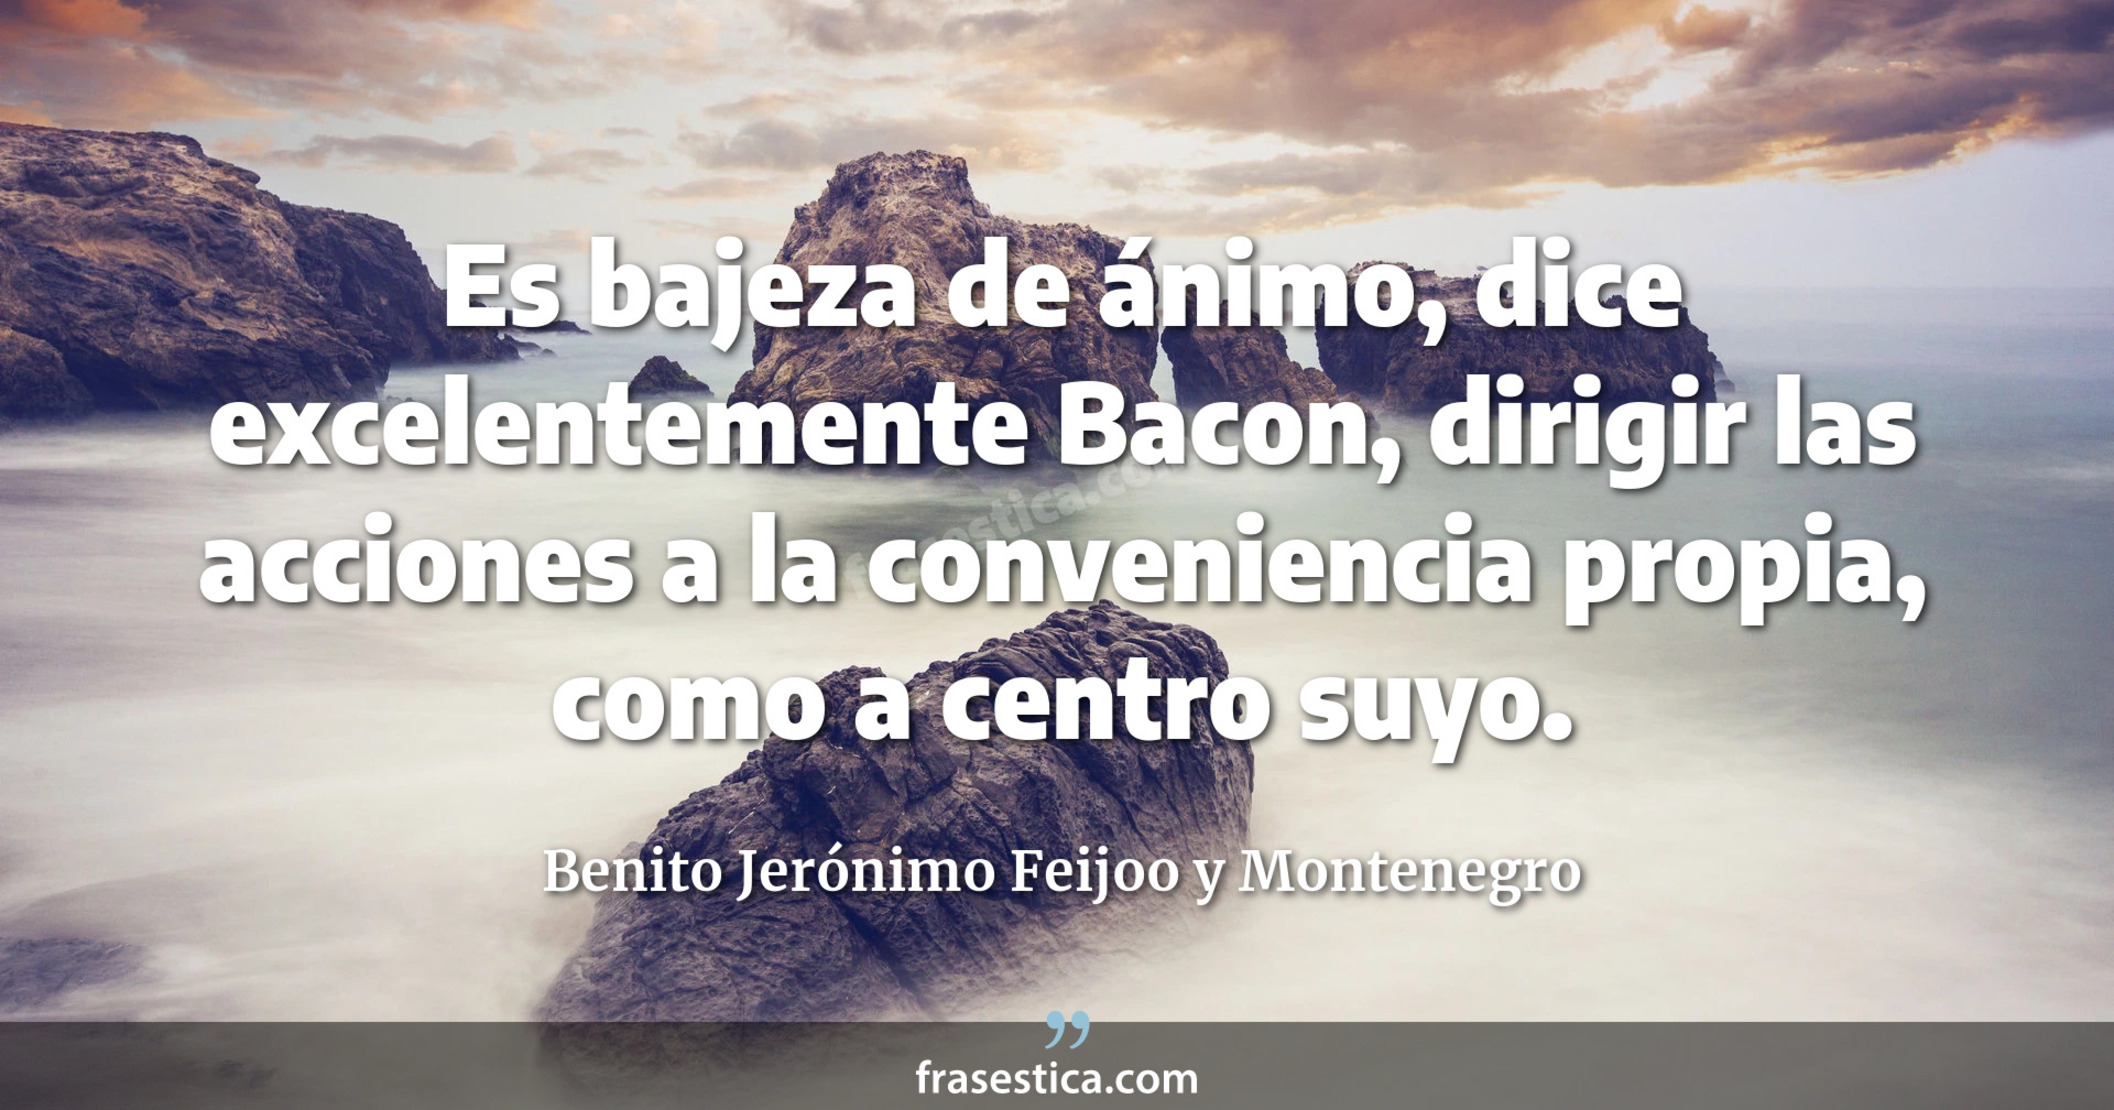 Es bajeza de ánimo, dice excelentemente Bacon, dirigir las acciones a la conveniencia propia, como a centro suyo. - Benito Jerónimo Feijoo y Montenegro